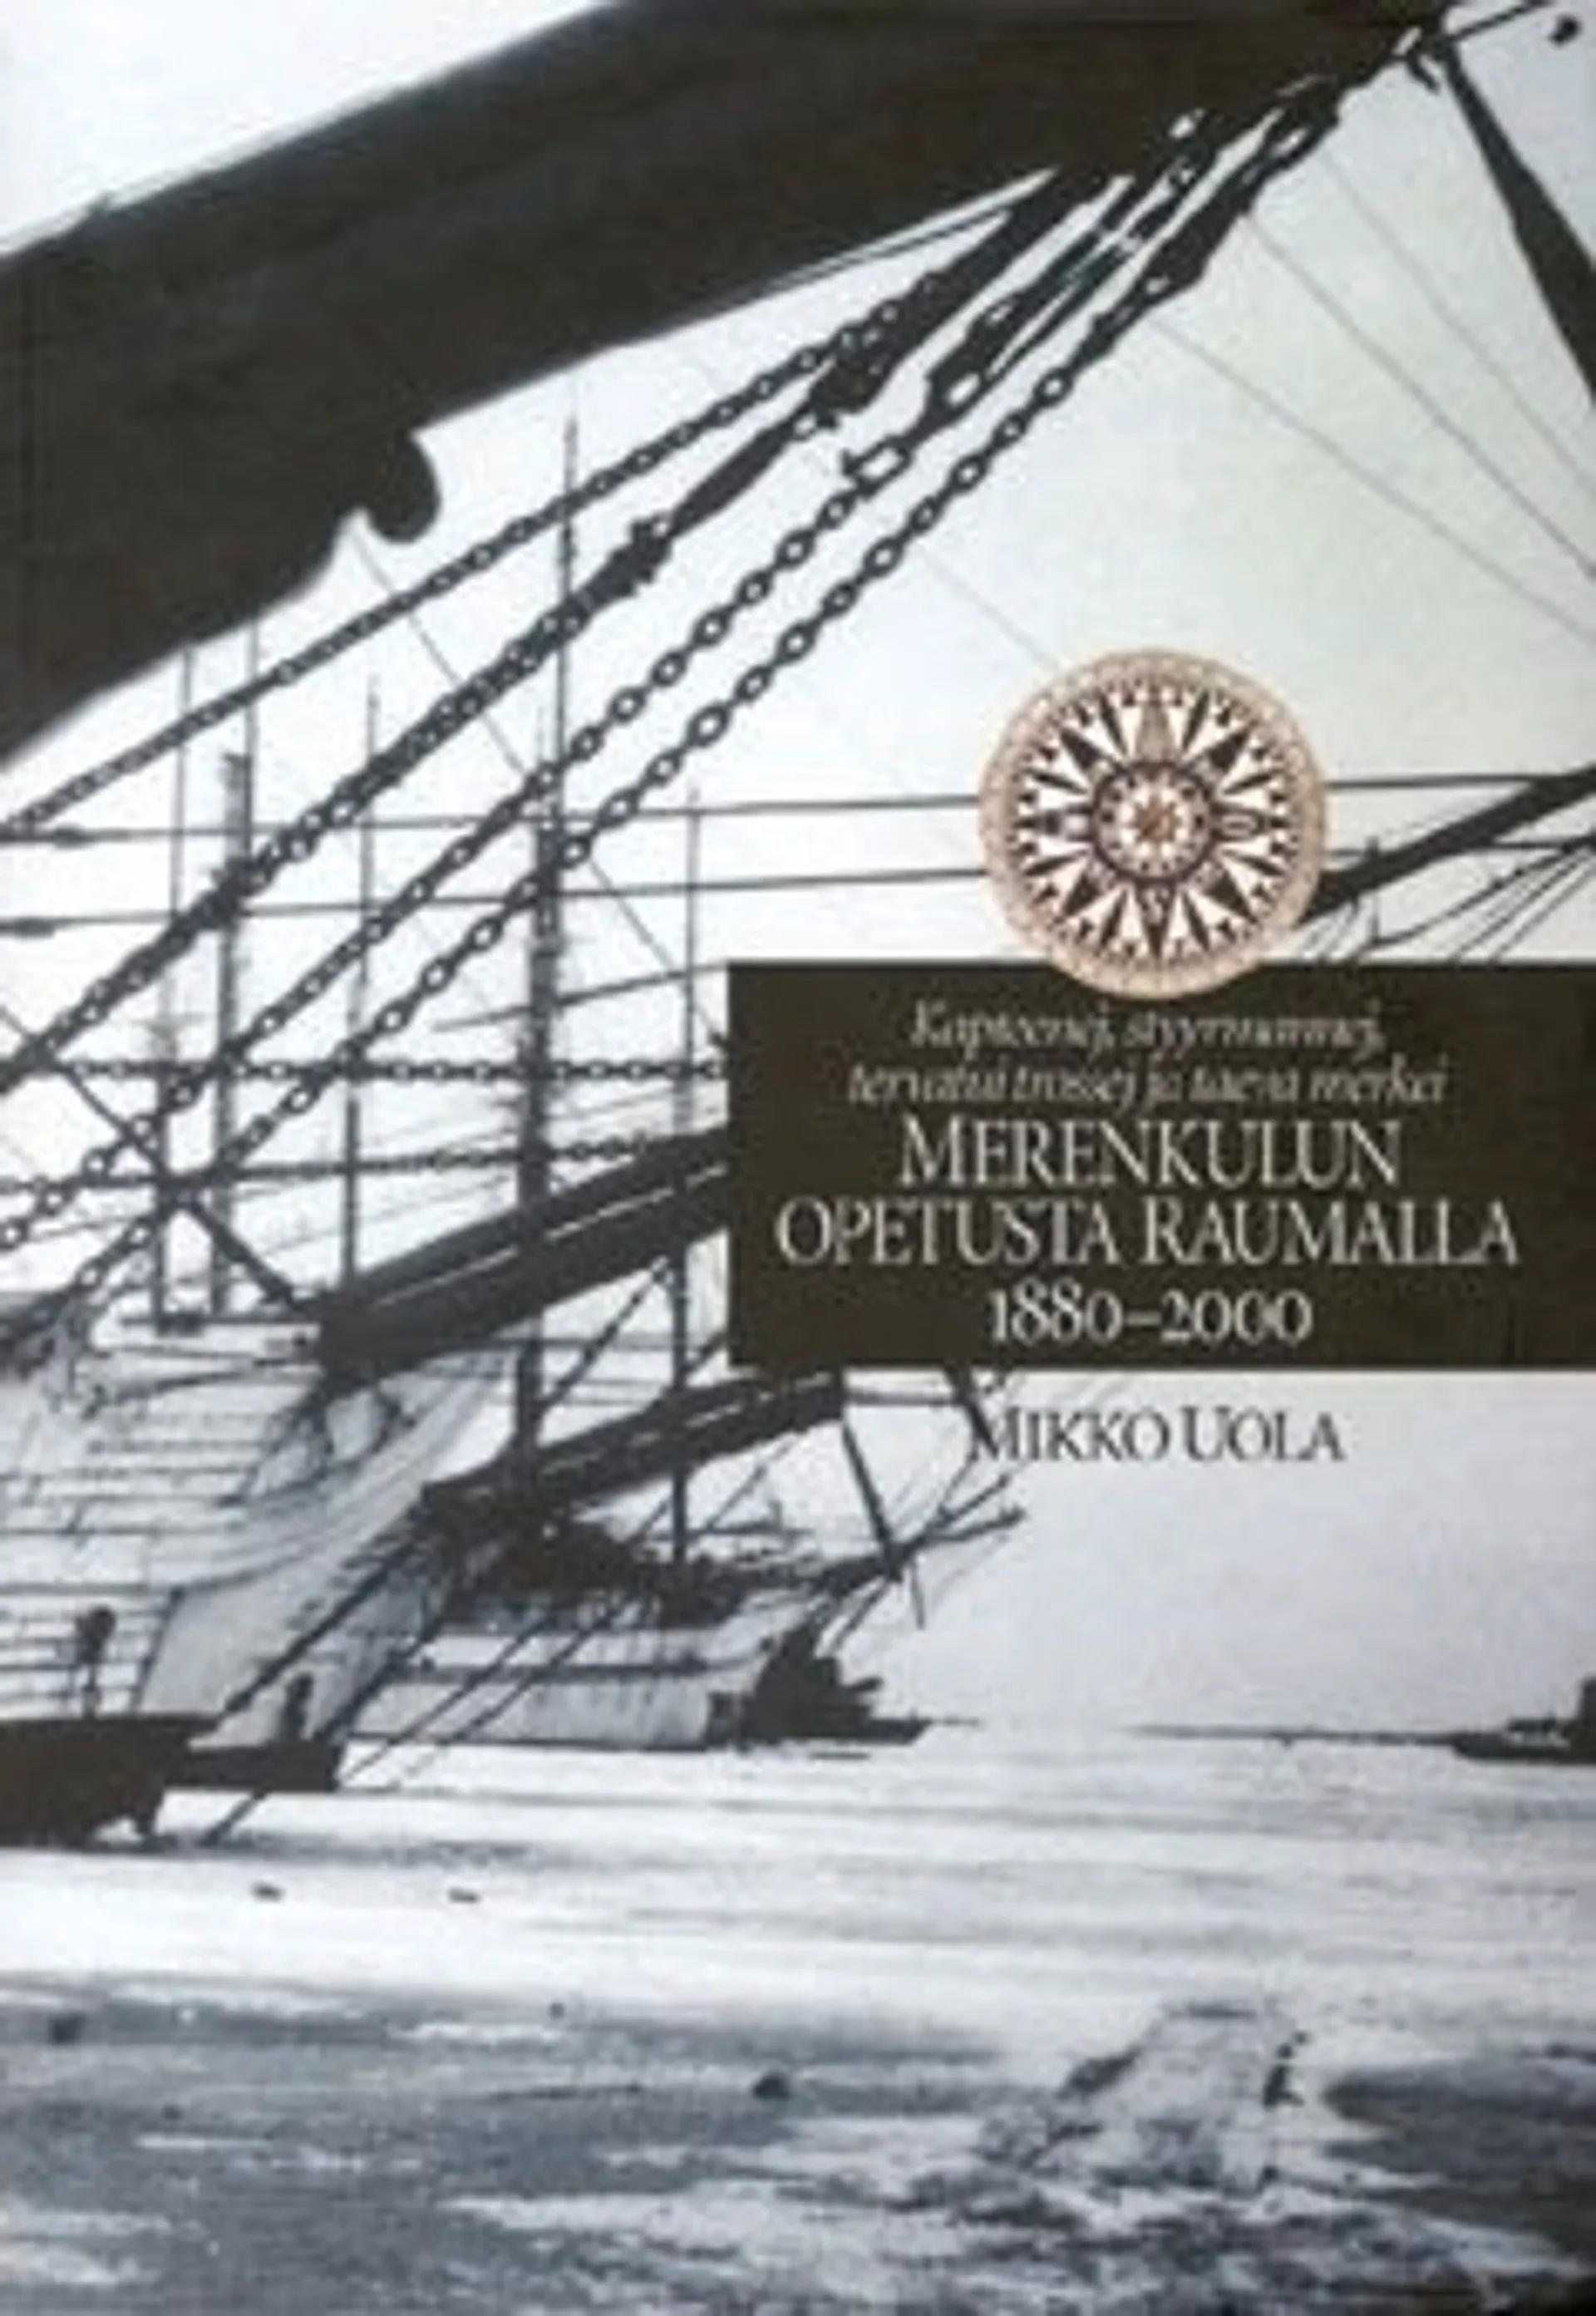 Merenkulun opetusta Raumalla 1880-2000